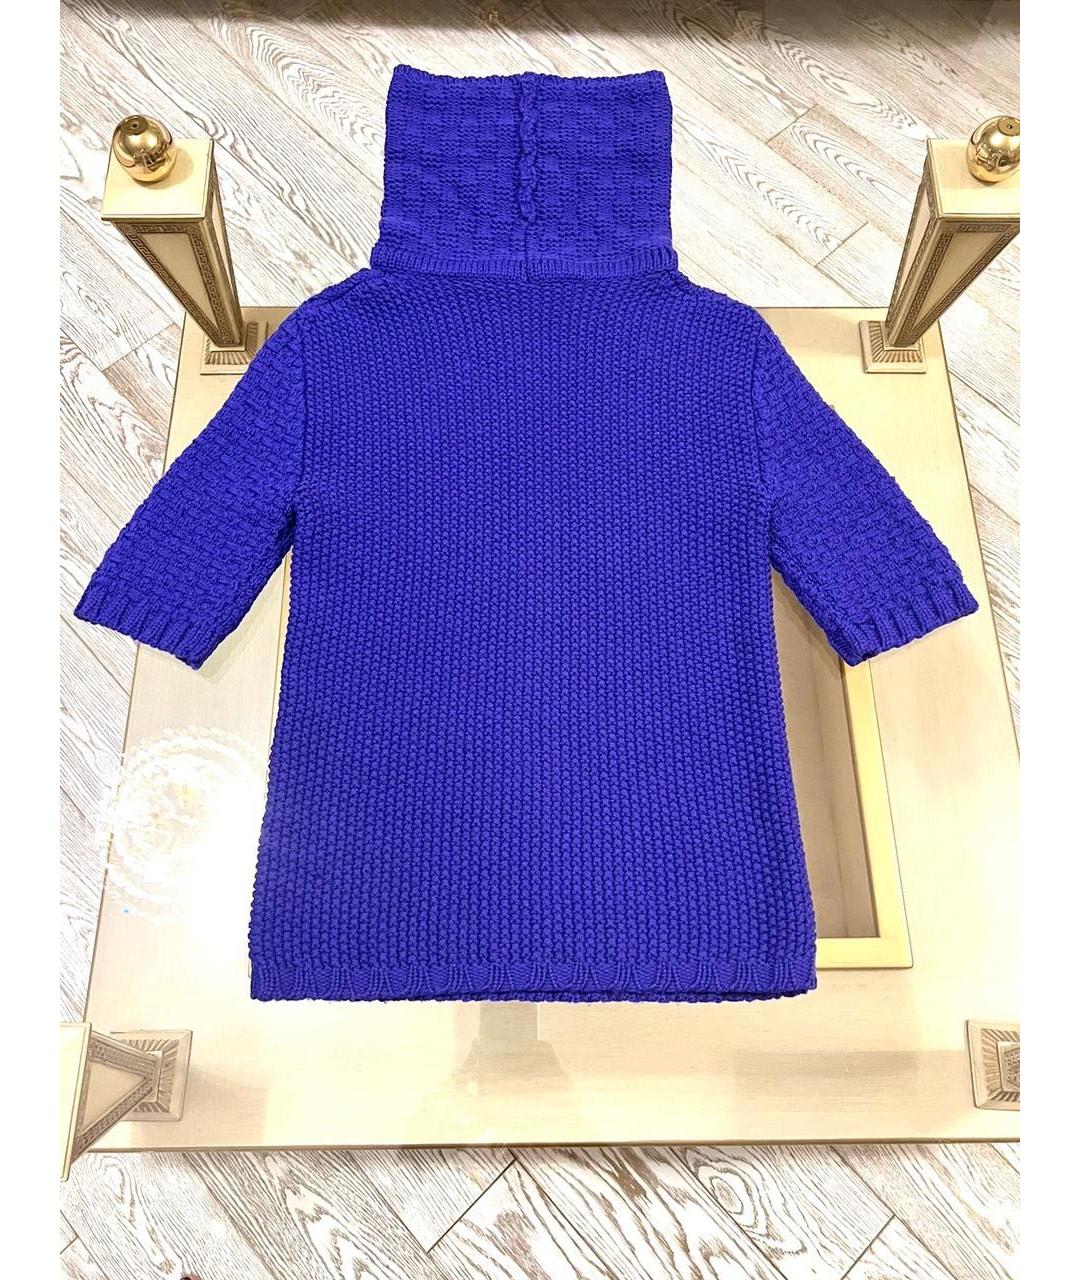 EMILIO PUCCI Фиолетовый шерстяной джемпер / свитер, фото 2